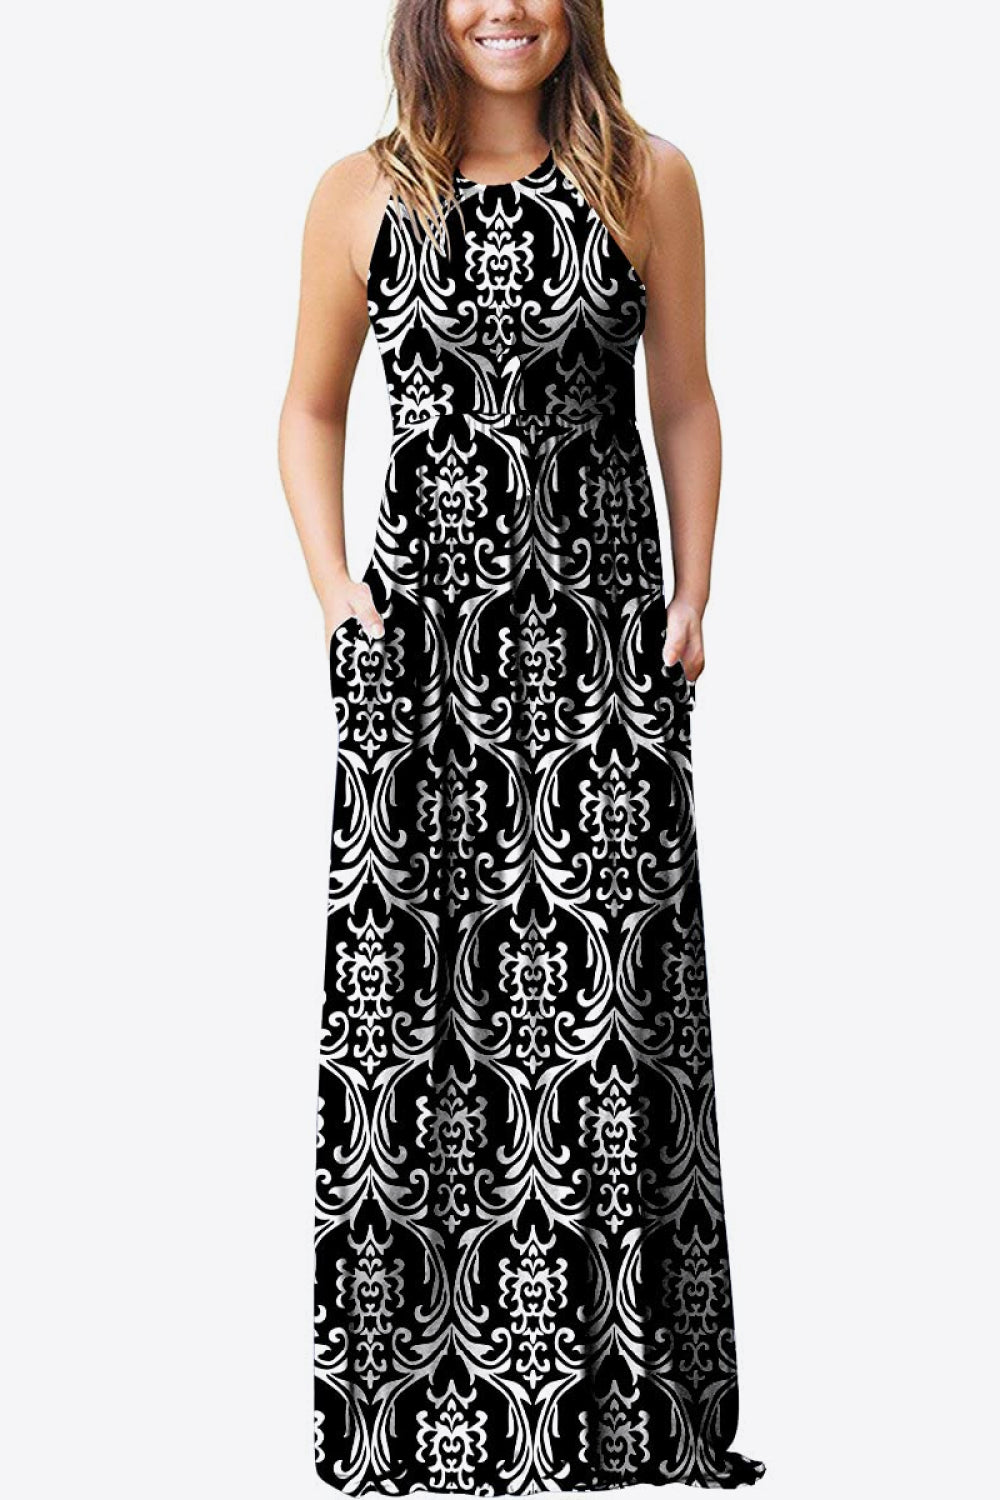 Black Empire Waist Sleeveless Dress with Pockets